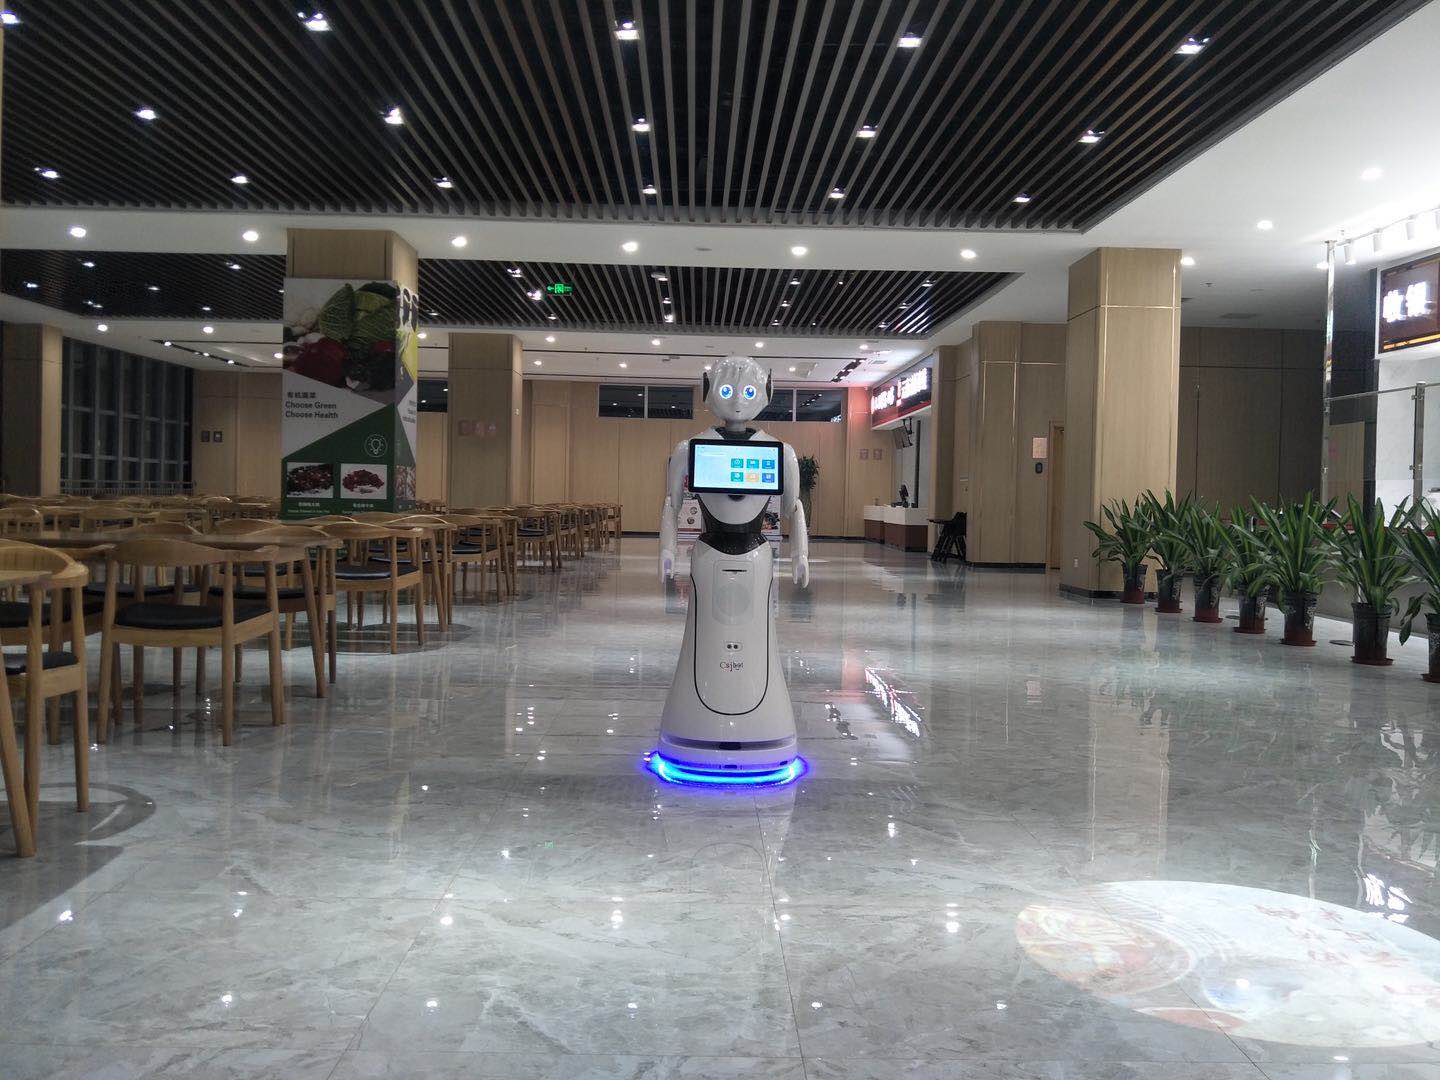 吉林红外测温机器人性价比高 欢迎来电 昆山新正源机器人智能科技供应